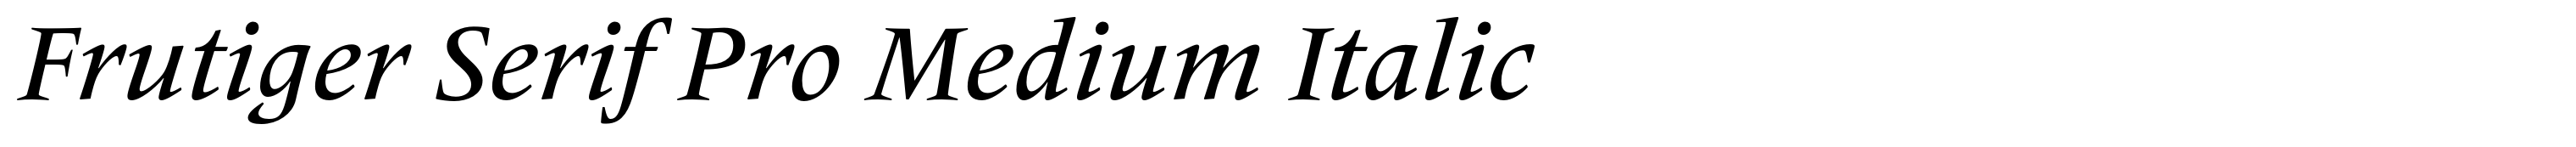 Frutiger Serif Pro Medium Italic